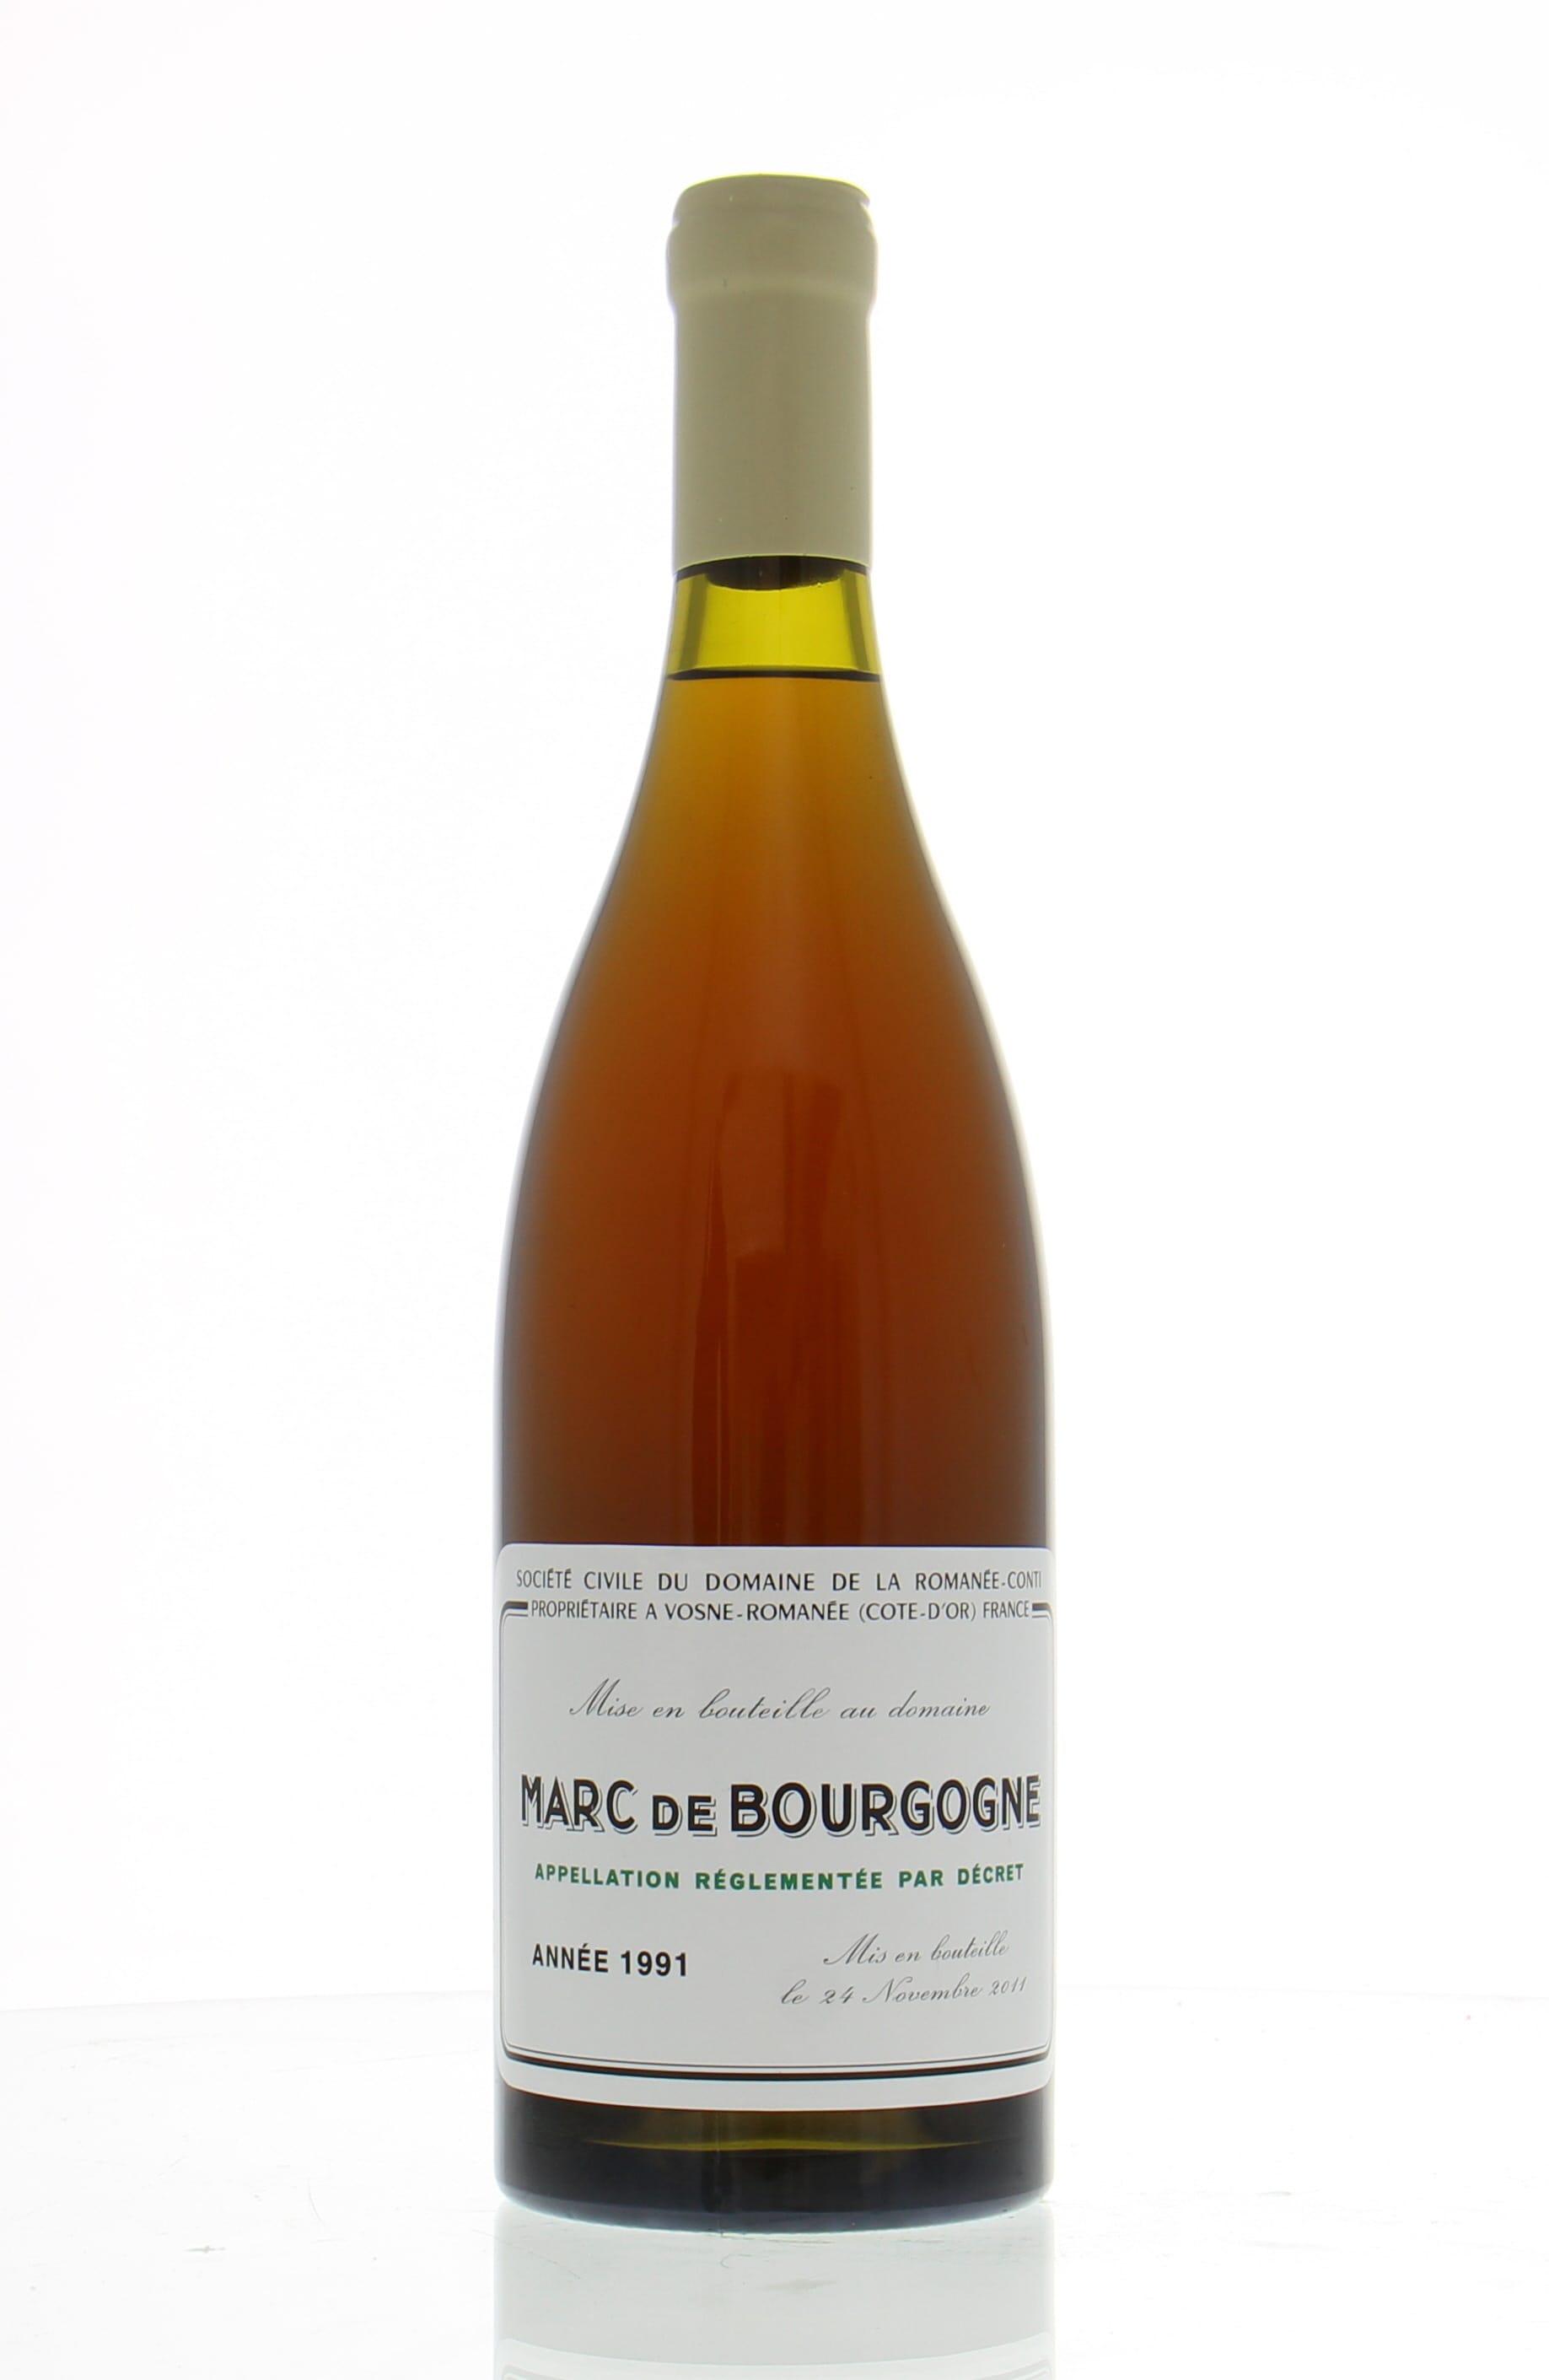 Domaine de la Romanee Conti - Marc de Bourgogne 1991